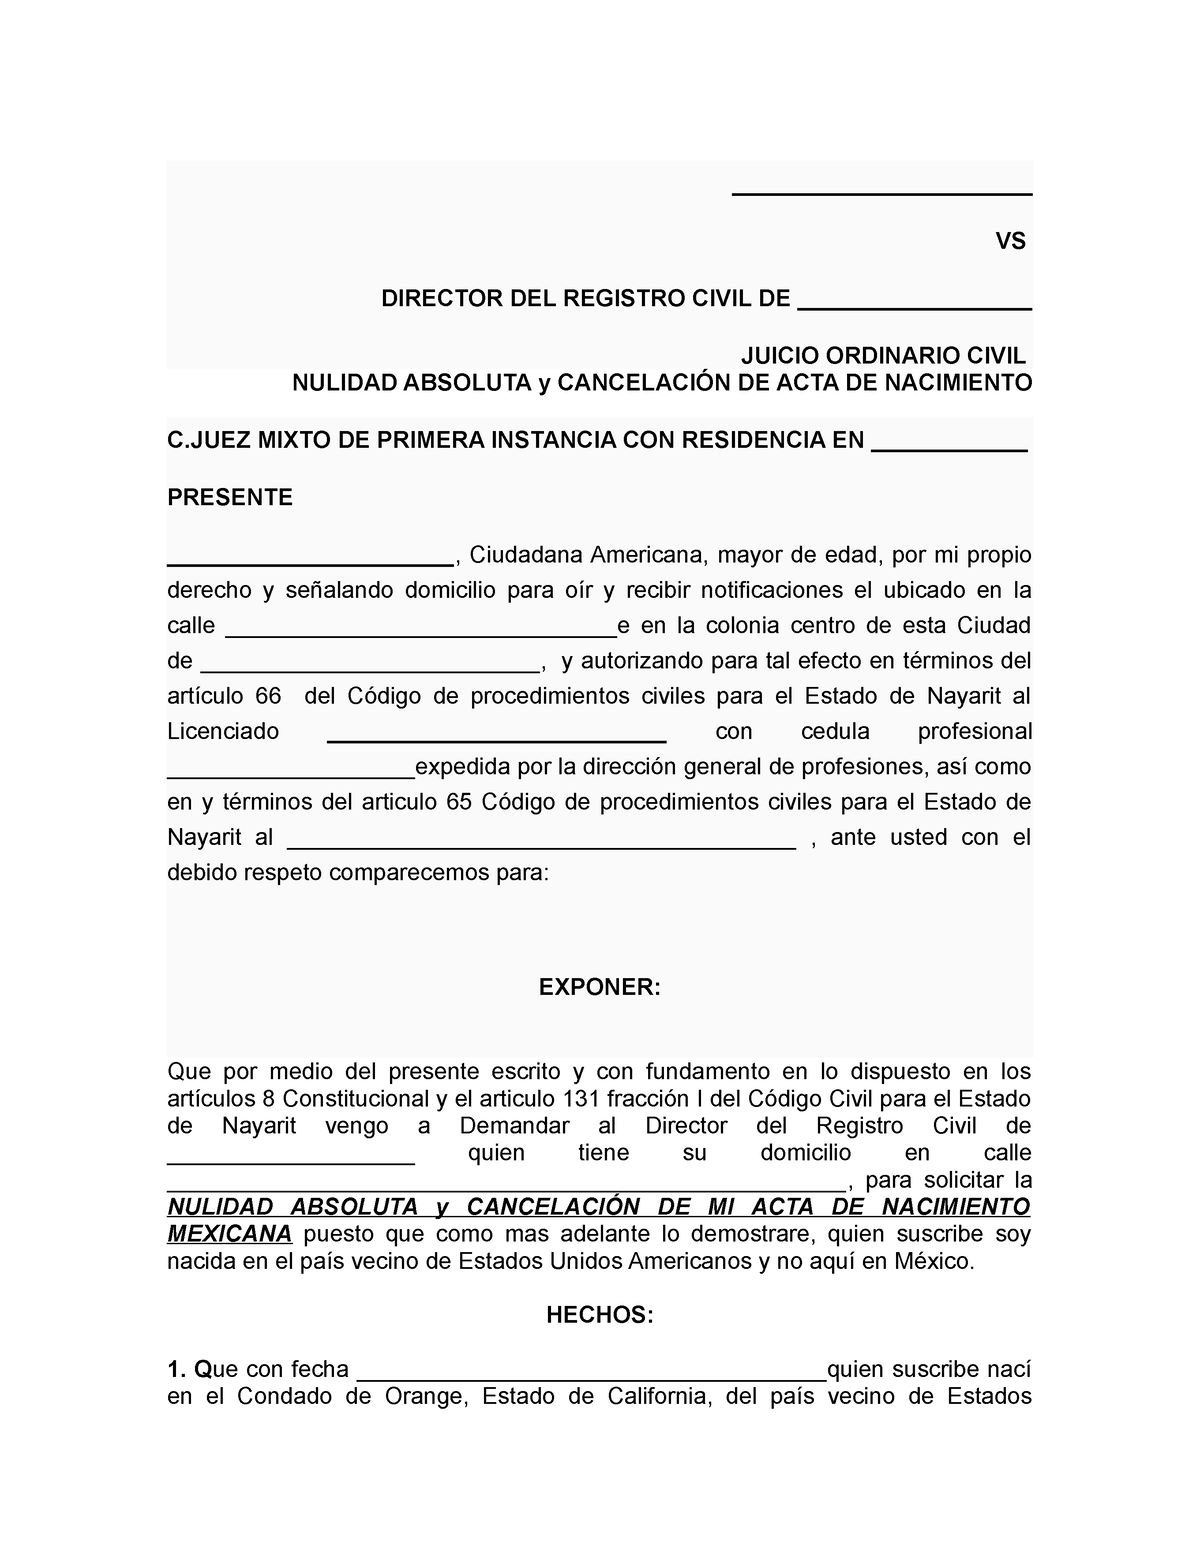 Nulidad Absoluta y CancelacióN DE ACTA DE Nacimiento Nayarit - VS DIRECTOR  - Studocu